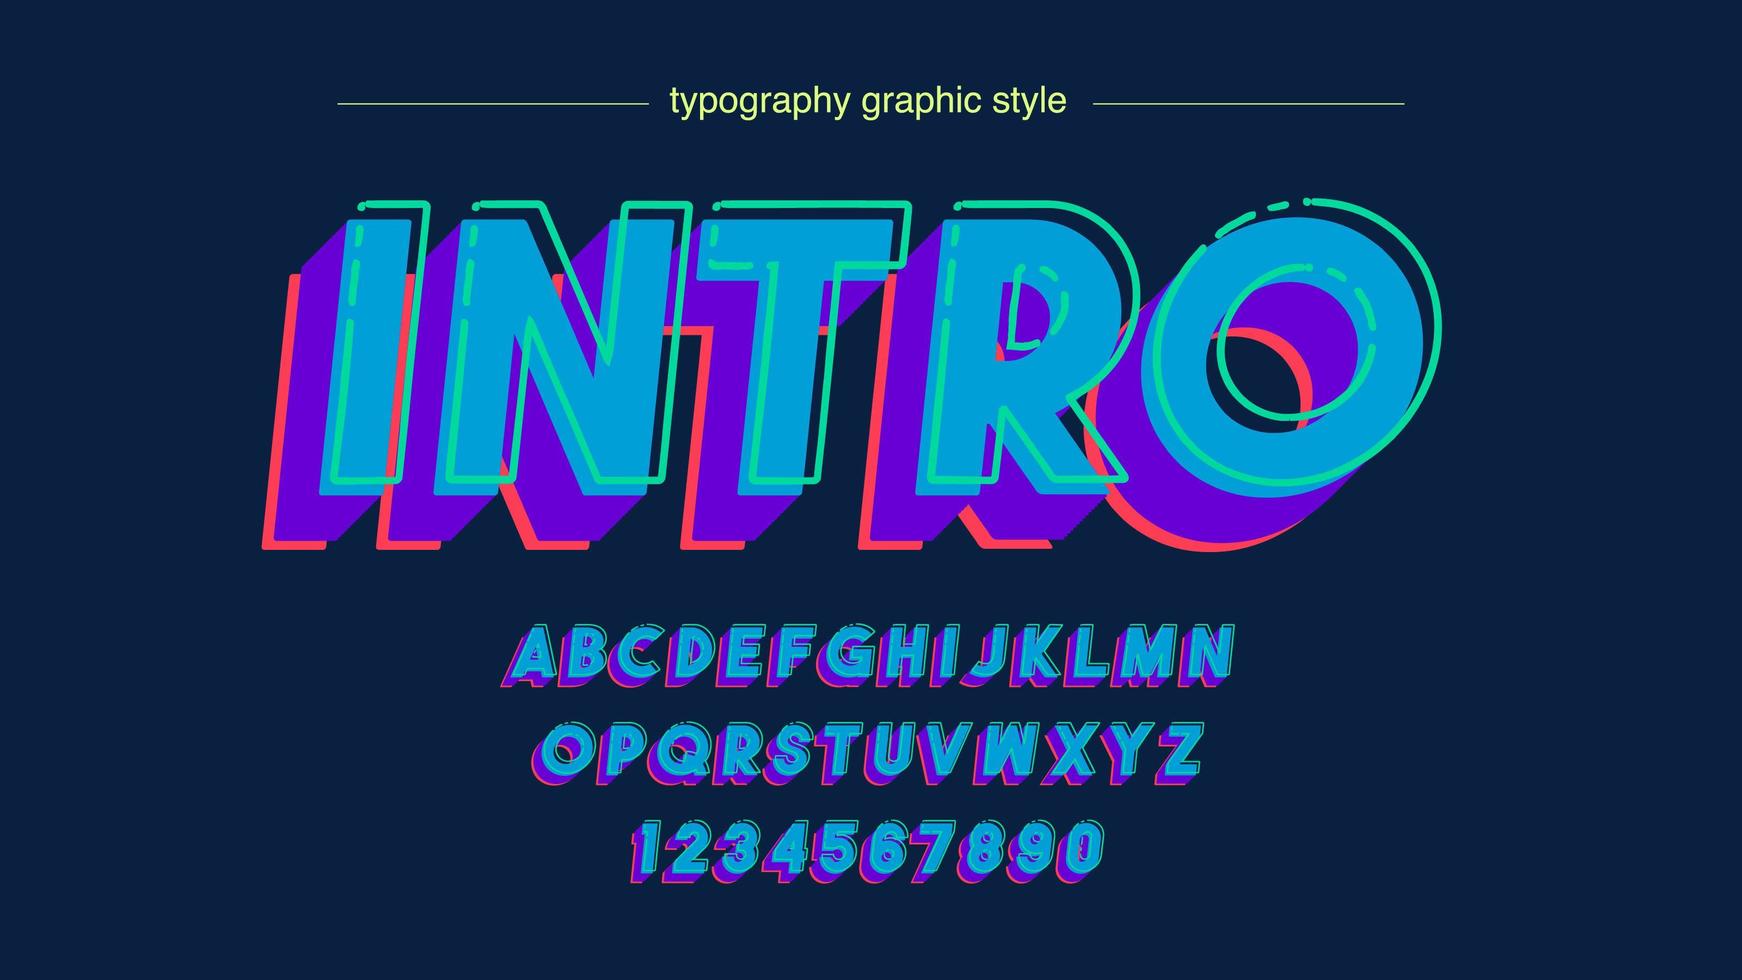 blauwe vette 3d typografie in hoofdletters vector